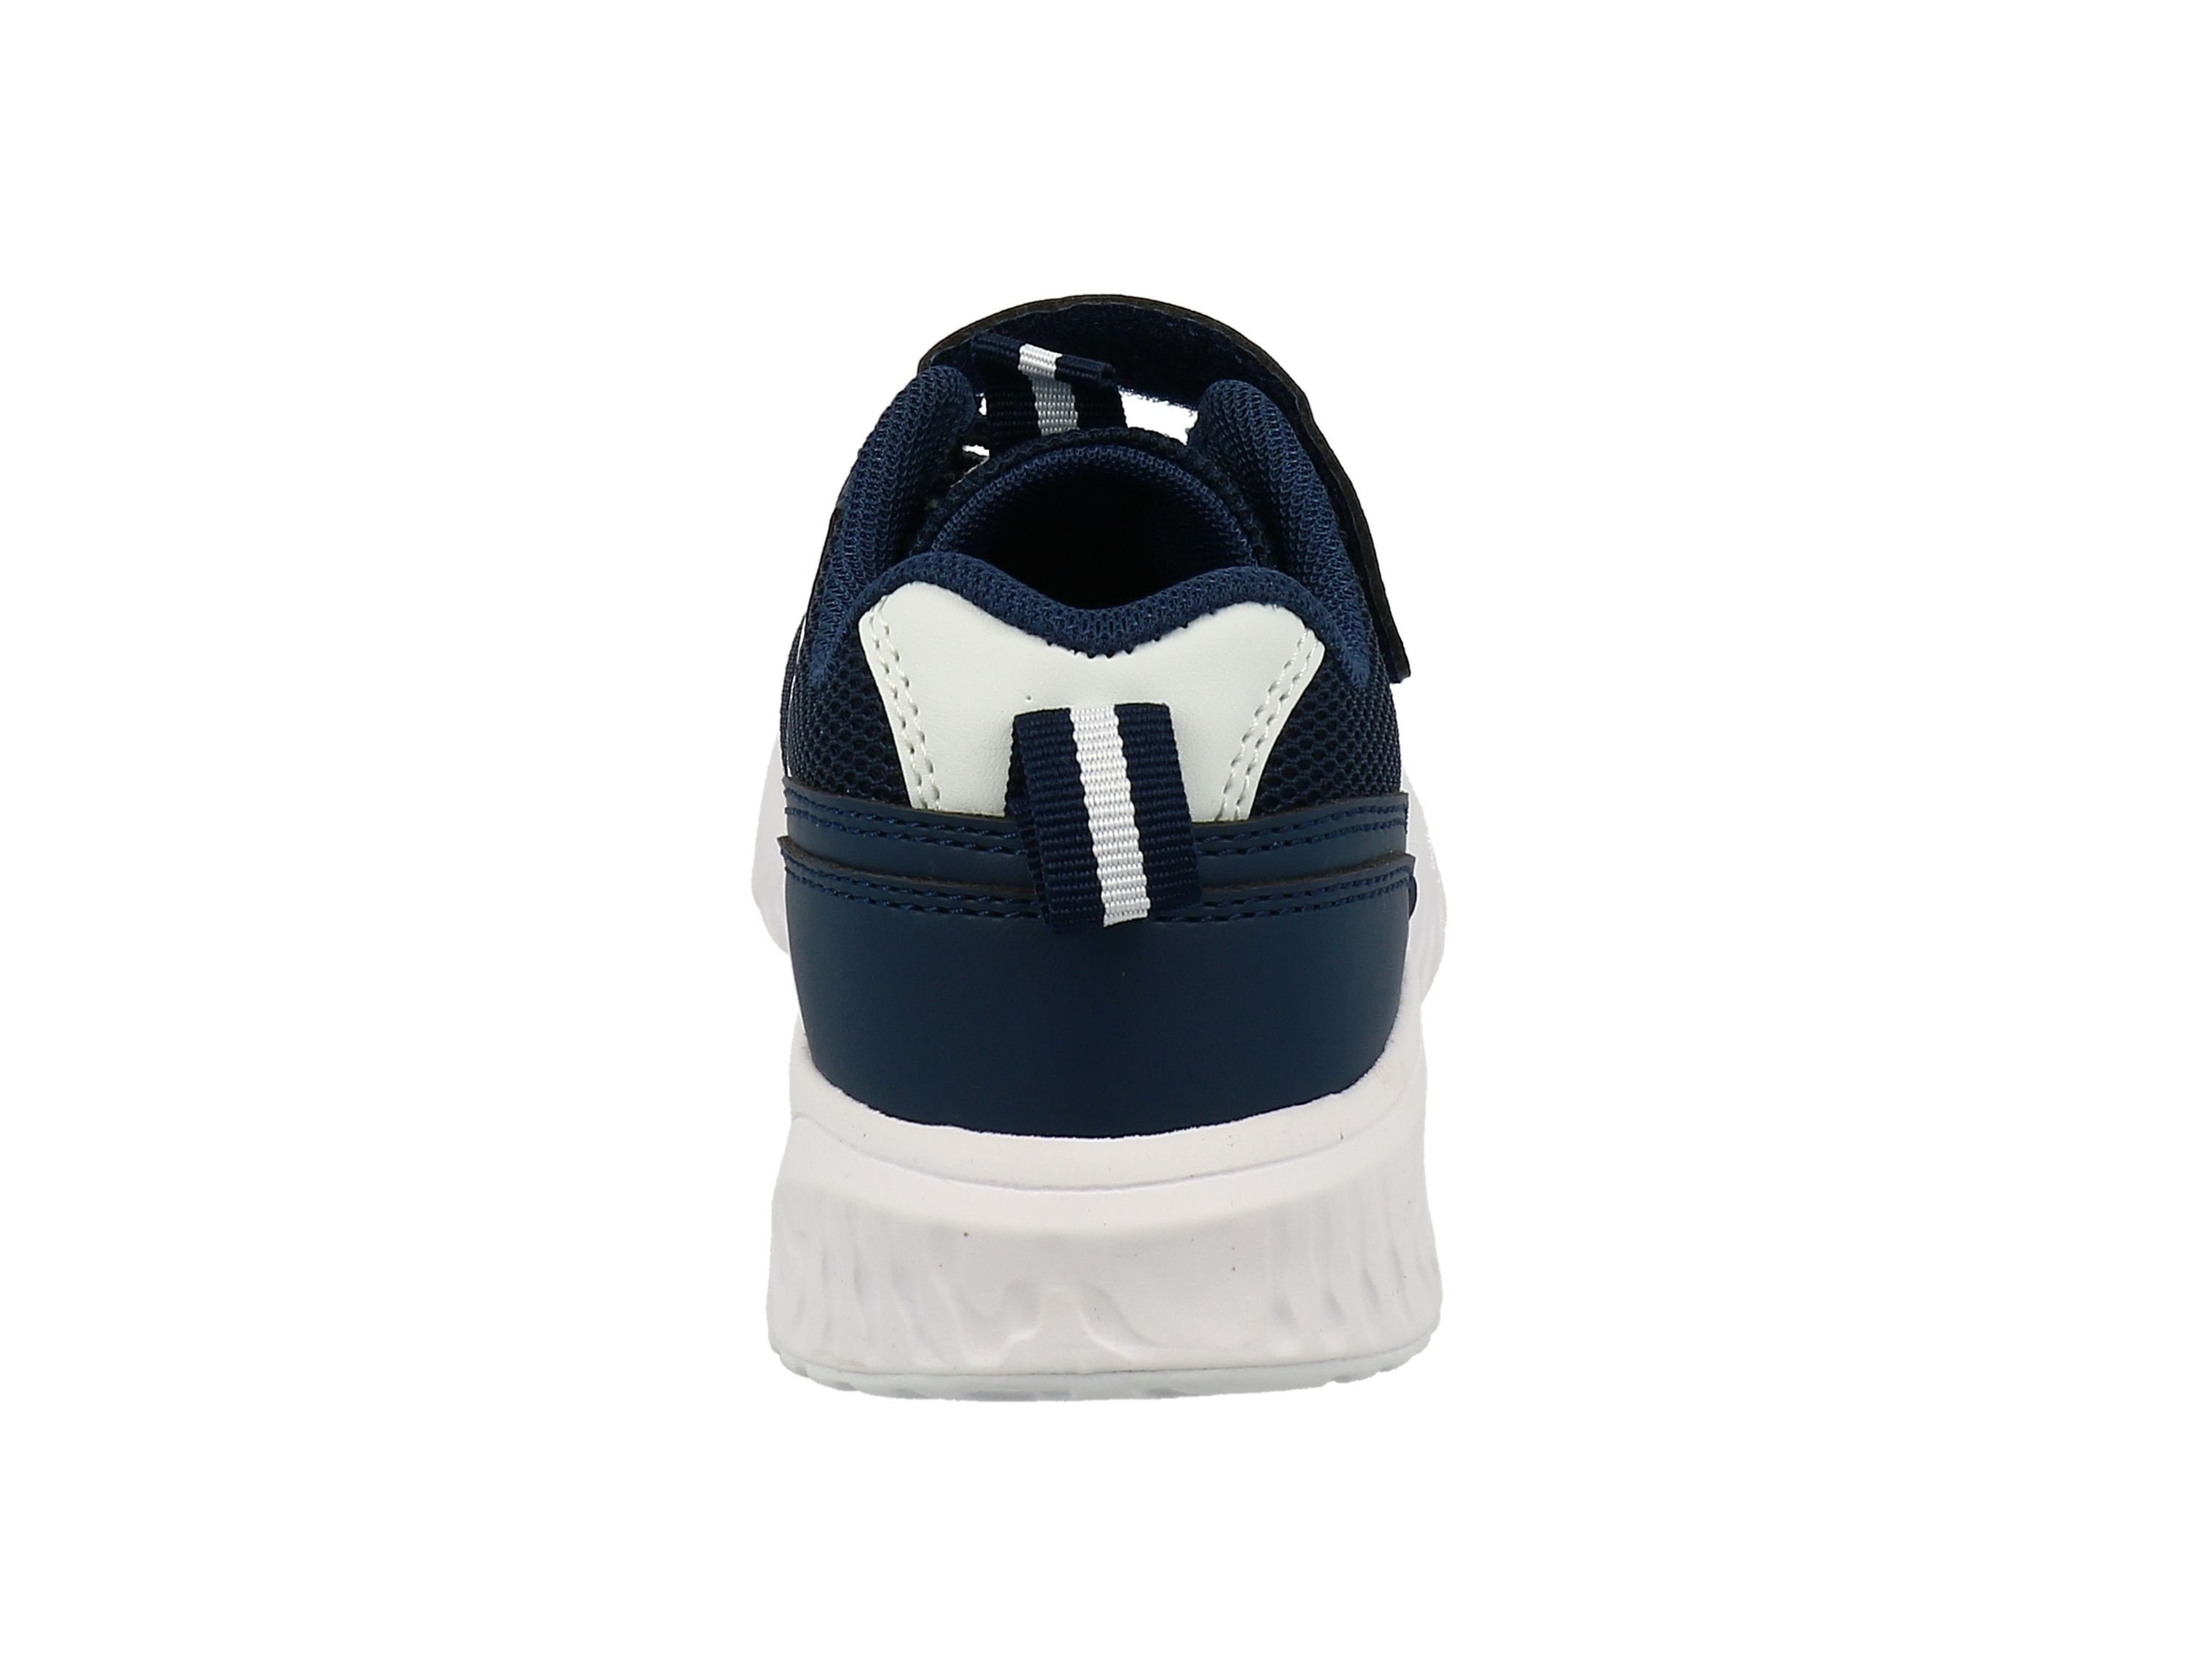 Farben Schnürhalbschuhe navy-white Tailor knallige Kinder TOM 3274601 Tom sportlich Sneaker TAILOR